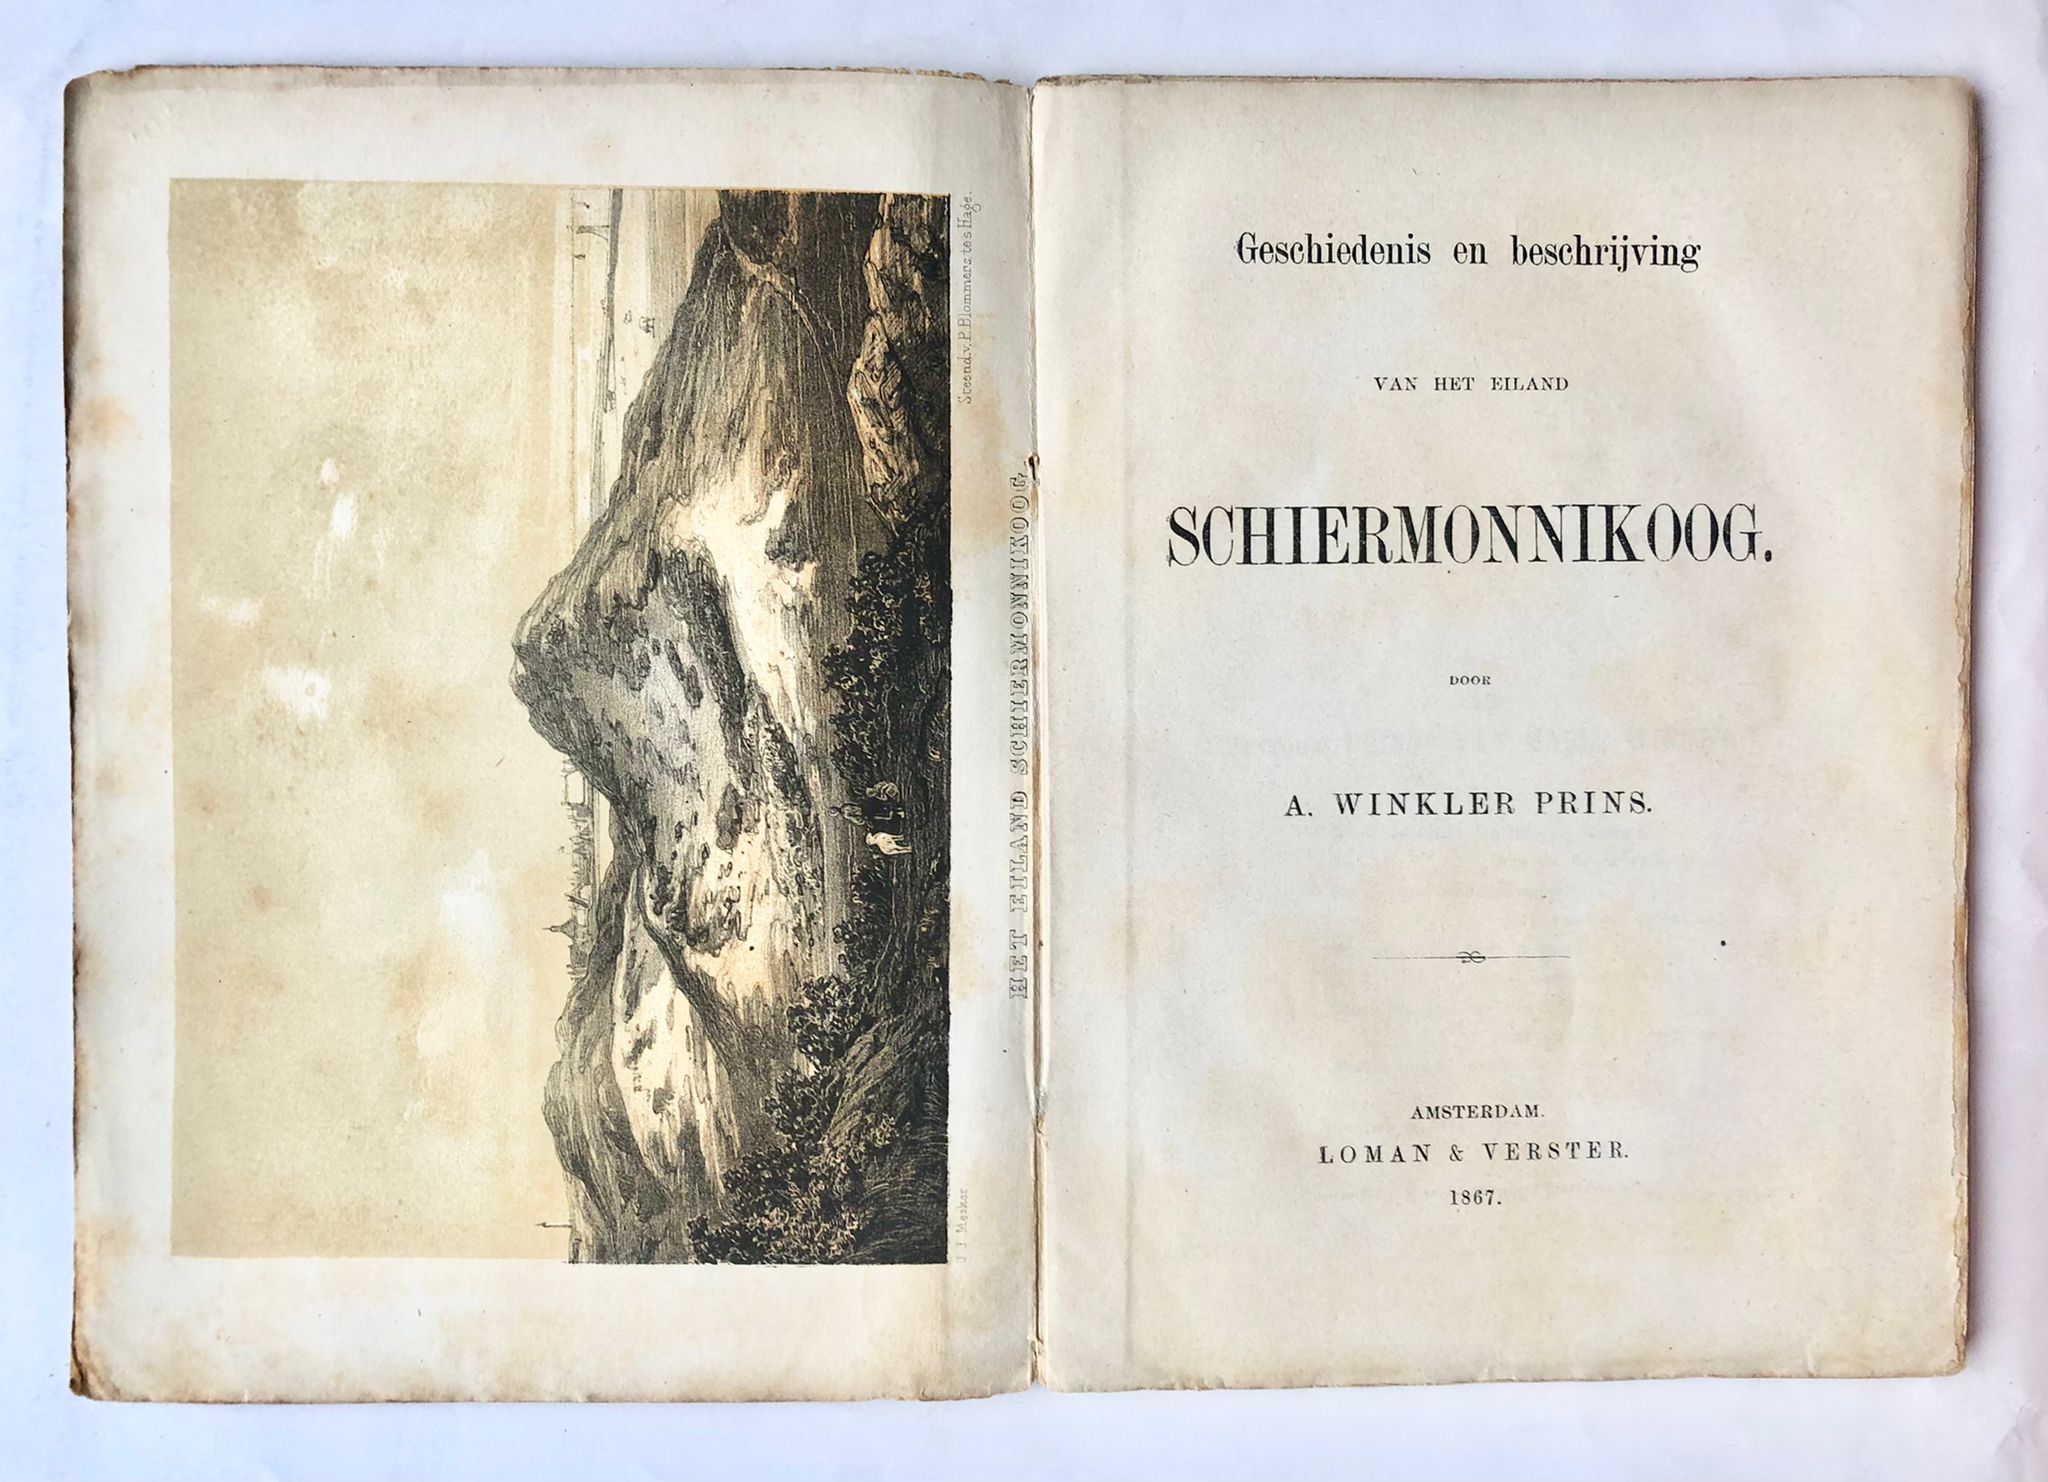 [First edition, Schiermonnikoog, 1868] Geschiedenis en beschrijving van het eiland Schiermonnikoog, Met een plaat, Loman & Verster, Amsterdam, 1868, 109 pp.